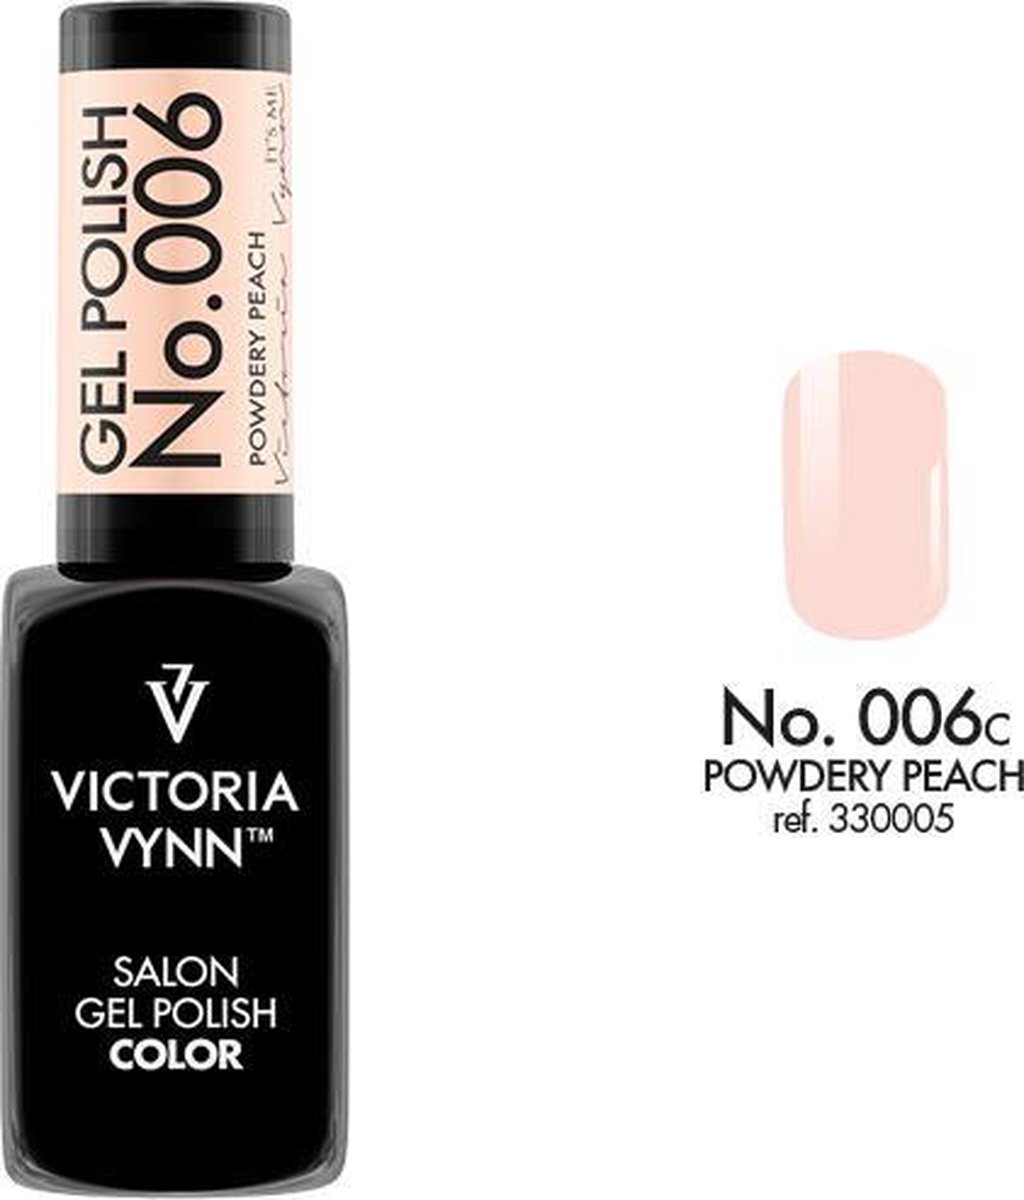 Gellak Victoria Vynn™ Gel Nagellak - Salon Gel Polish Color 006 - 8 ml. - Powdery Peach